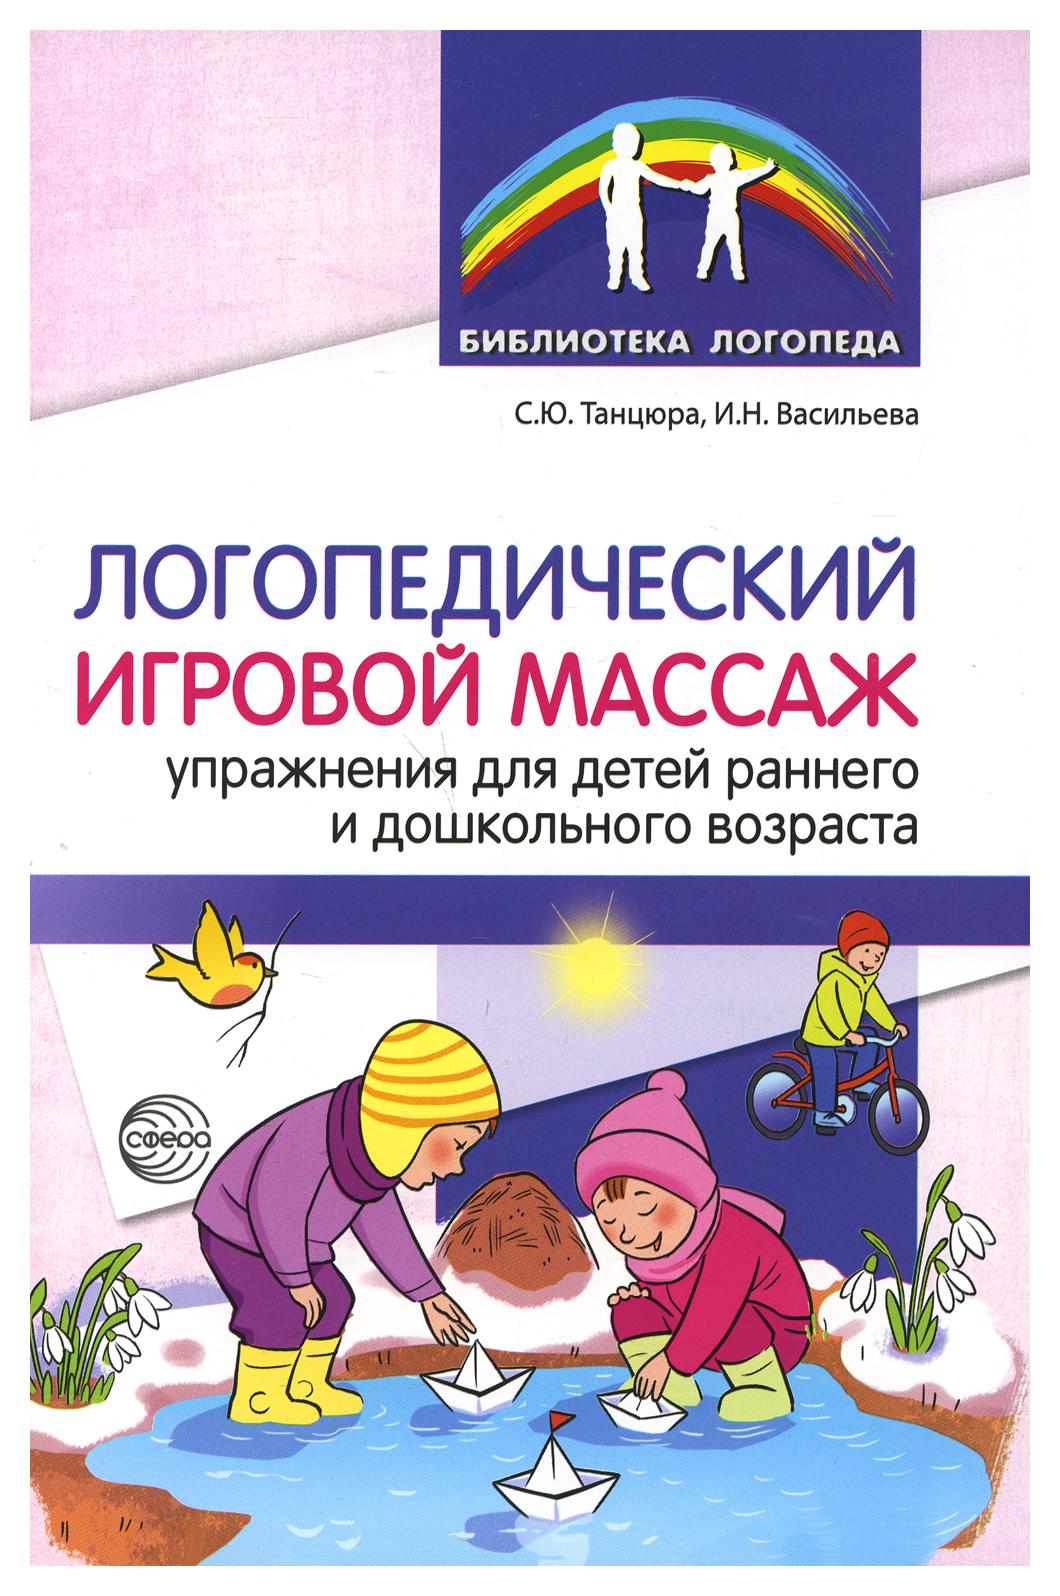 фото Книга логопедический игровой массаж: упражнения для детей раннего и дошкольного возраста творческий центр сфера